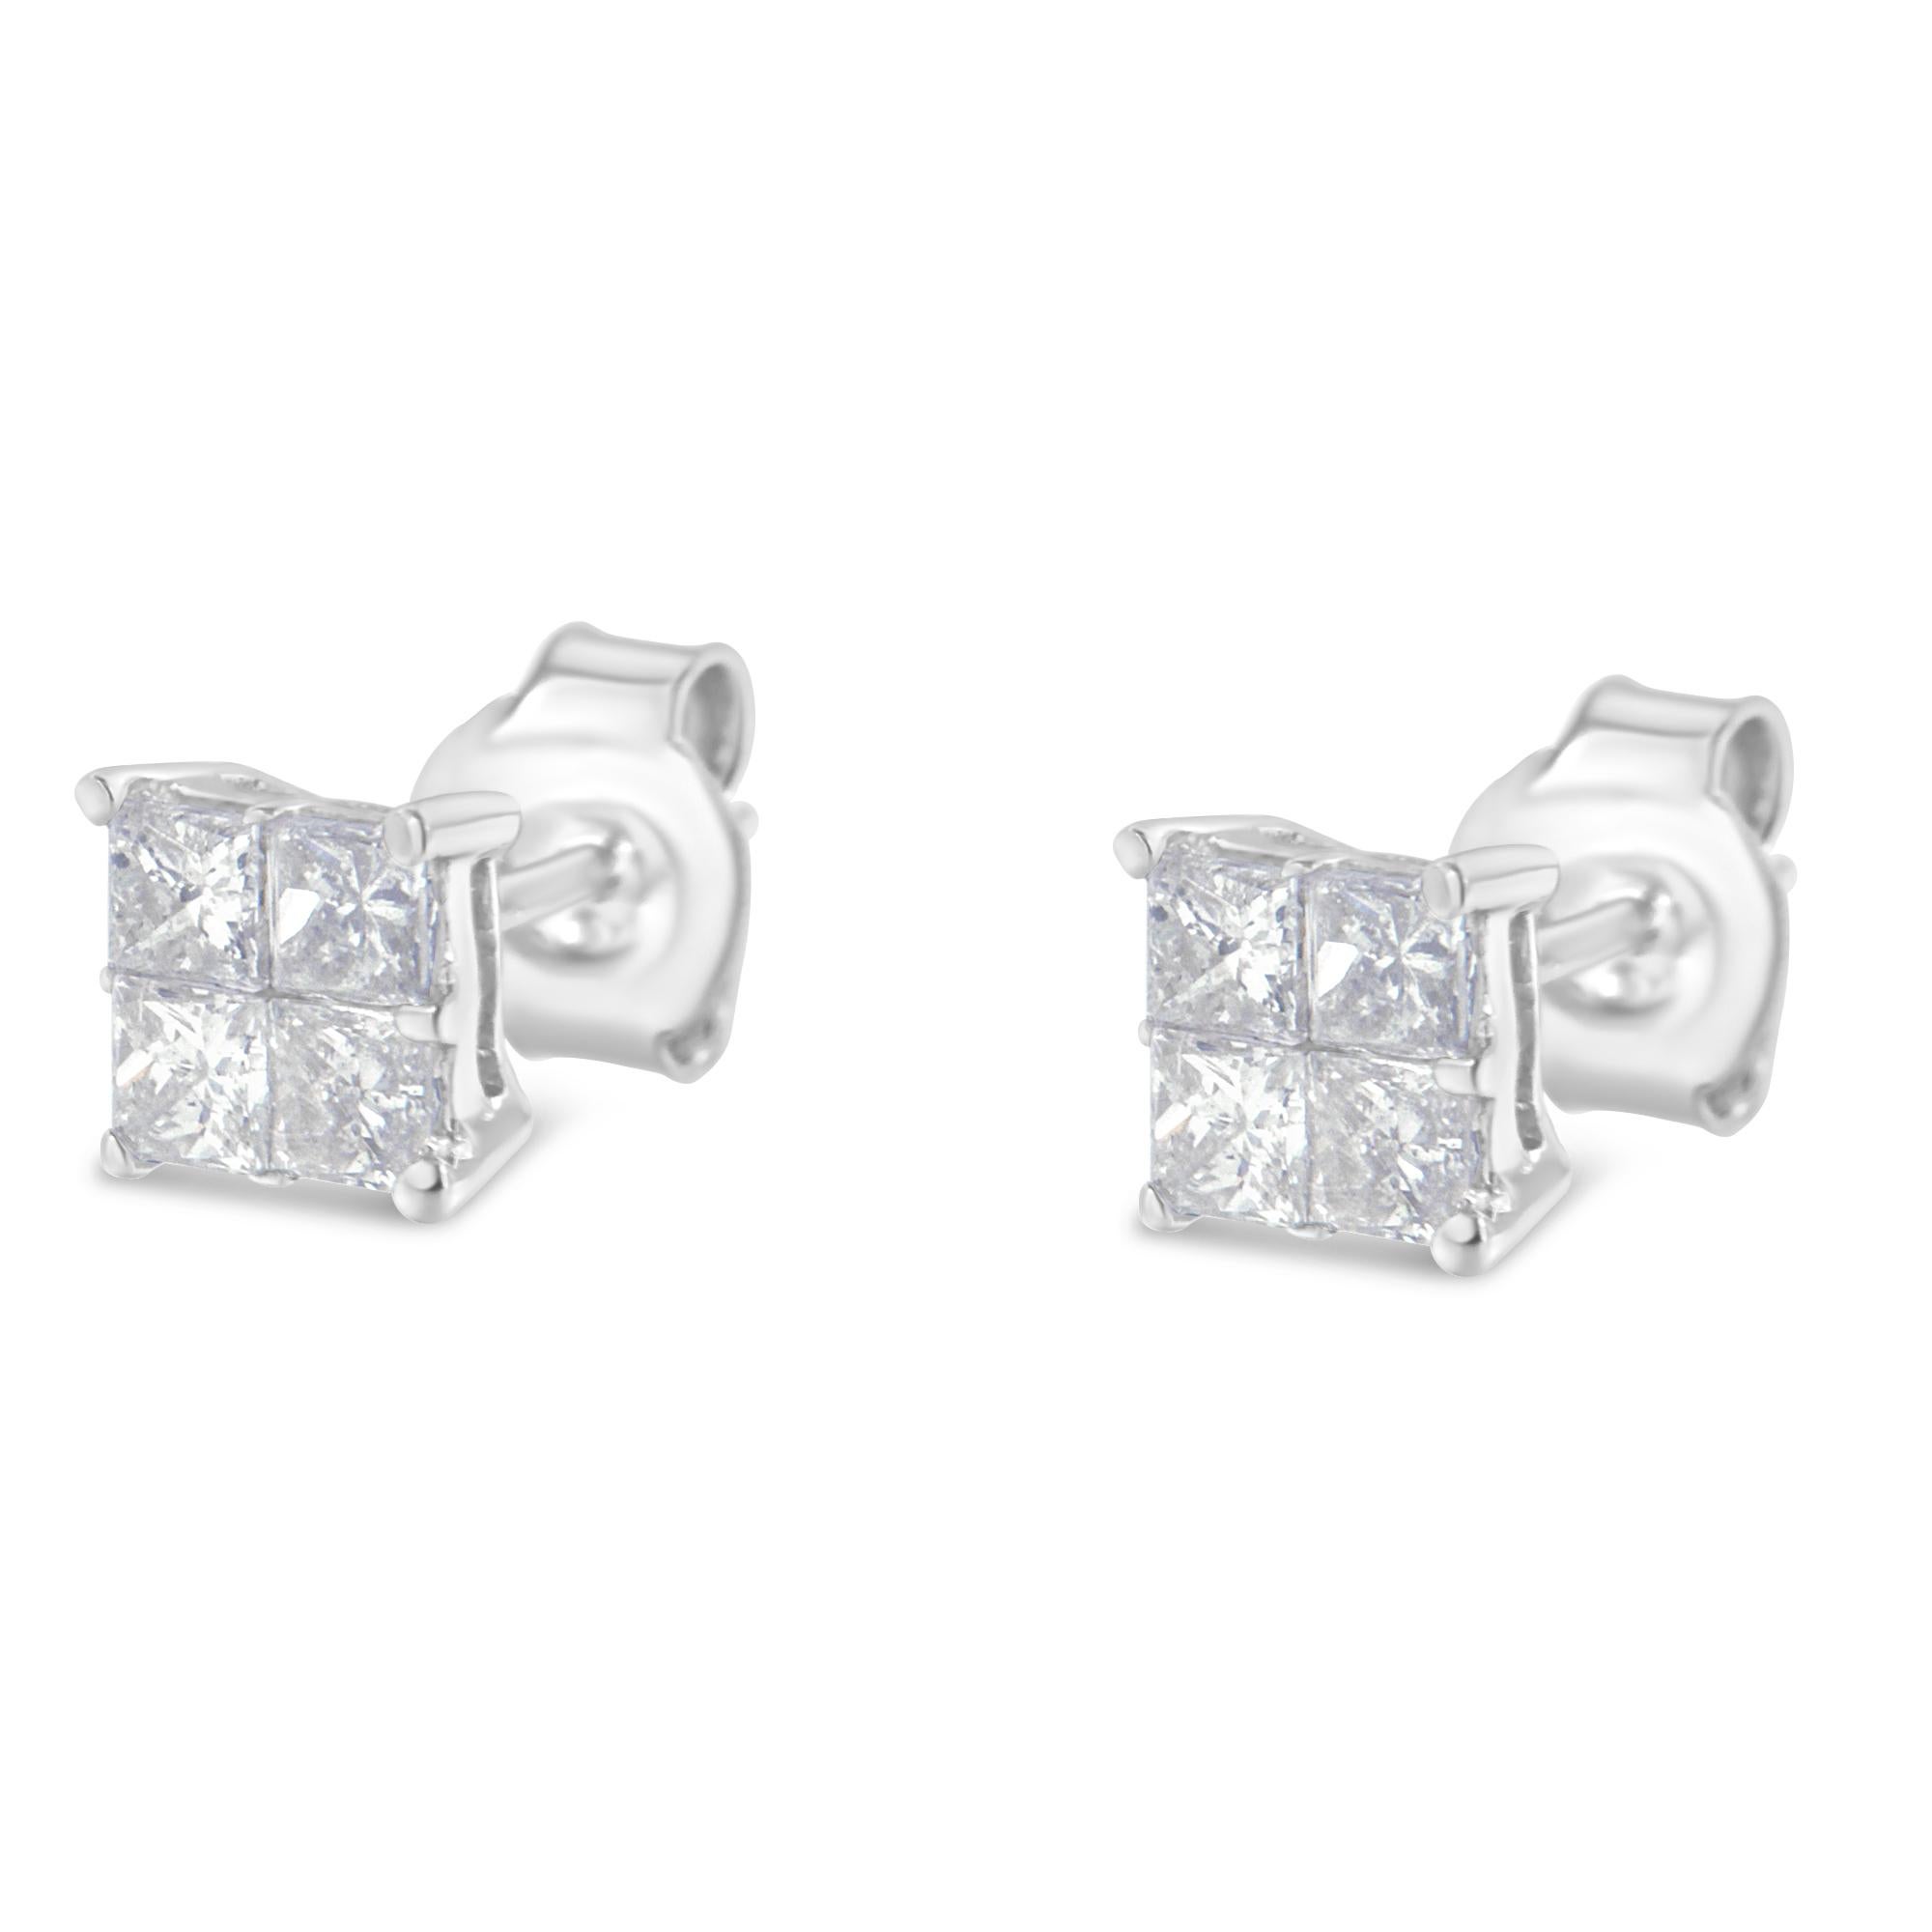 3 carat diamond stud earrings